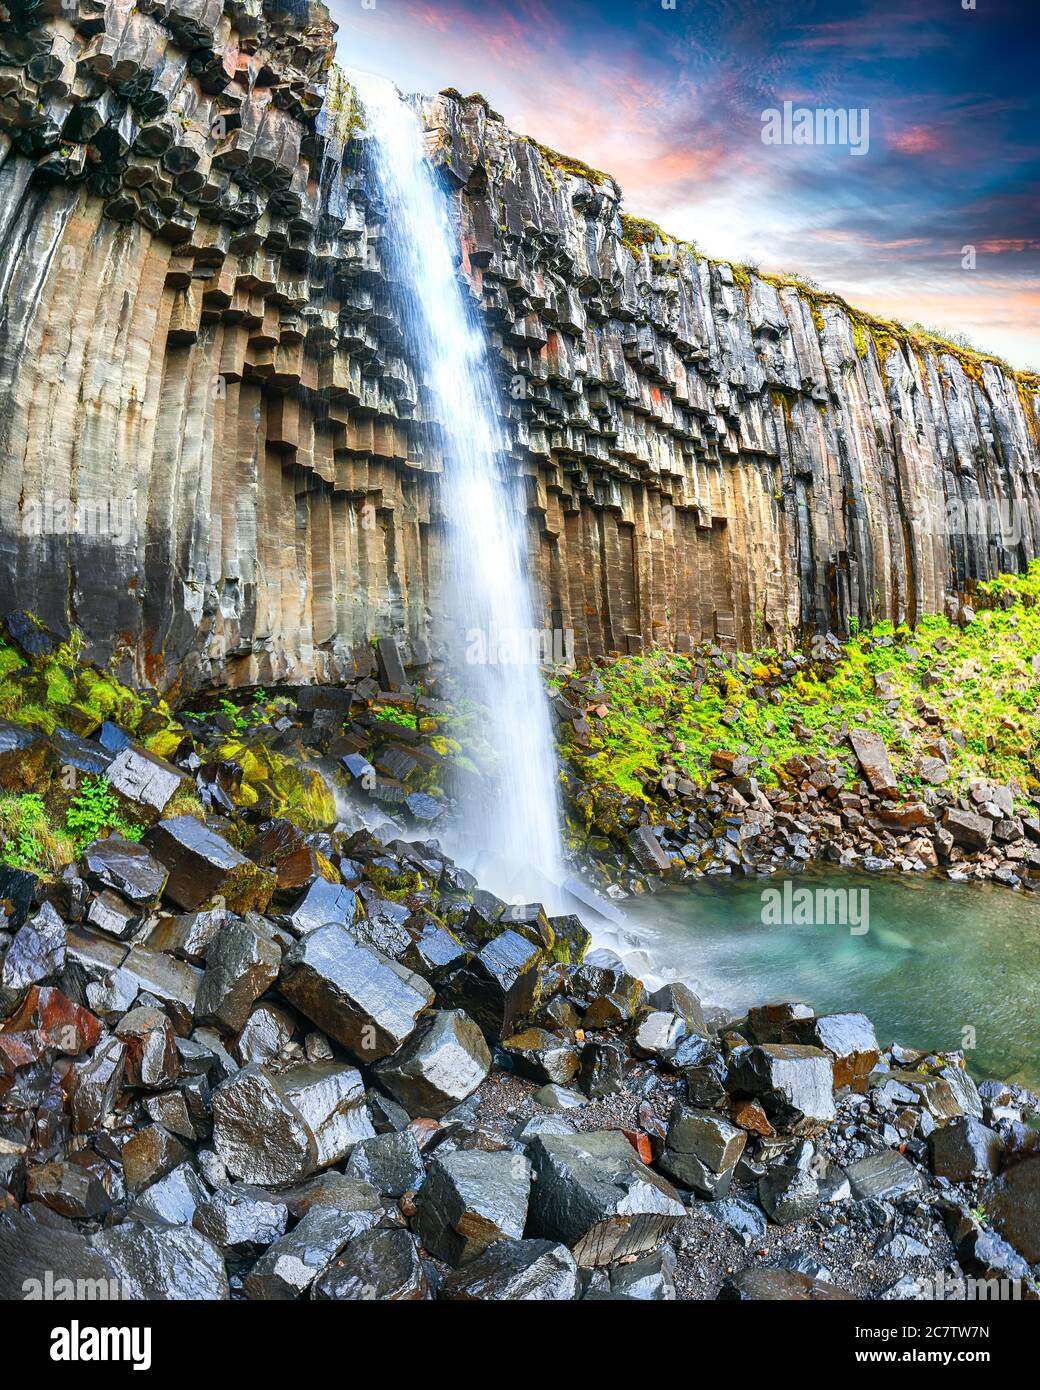 Herrliche Aussicht auf den Wasserfall von Svartifoss mit Basaltsäulen auf Südisland. Ort Skaftafell Nationalpark, Vatnajokull Gletscher, Island, Europa. Stockfoto